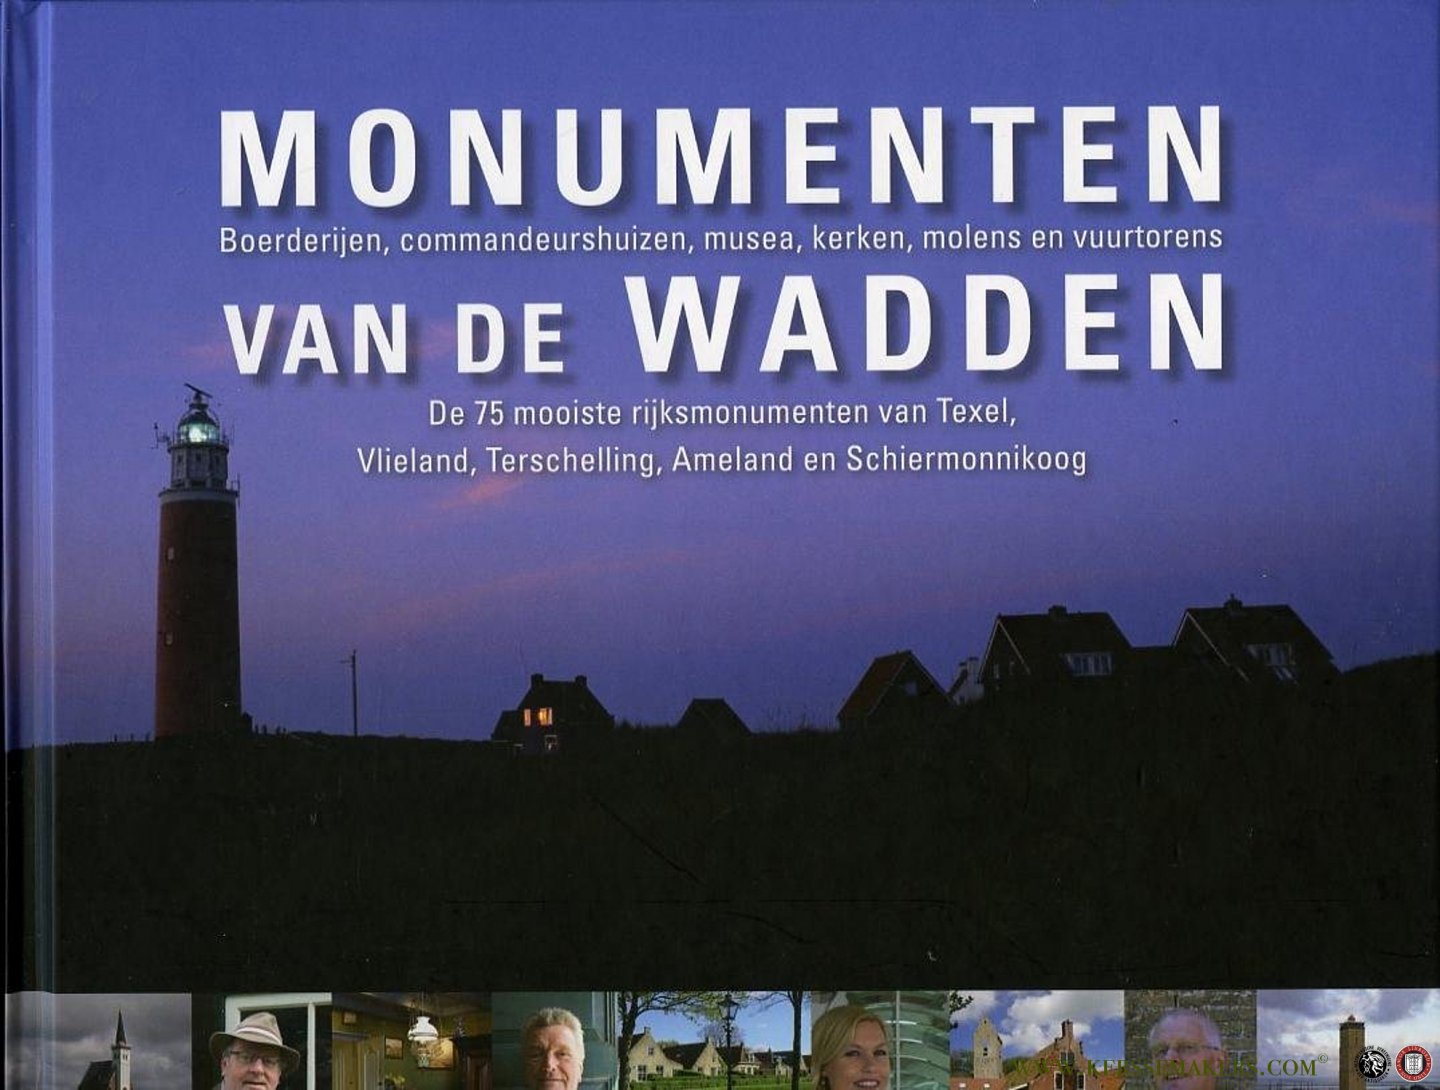 SCHOOLENAAR, Ger - Monumenten van de Wadden. De 75 mooiste rijksmonumenten van Texel, Vlieland, Terschelling, Ameland en Schiermonnikoog.